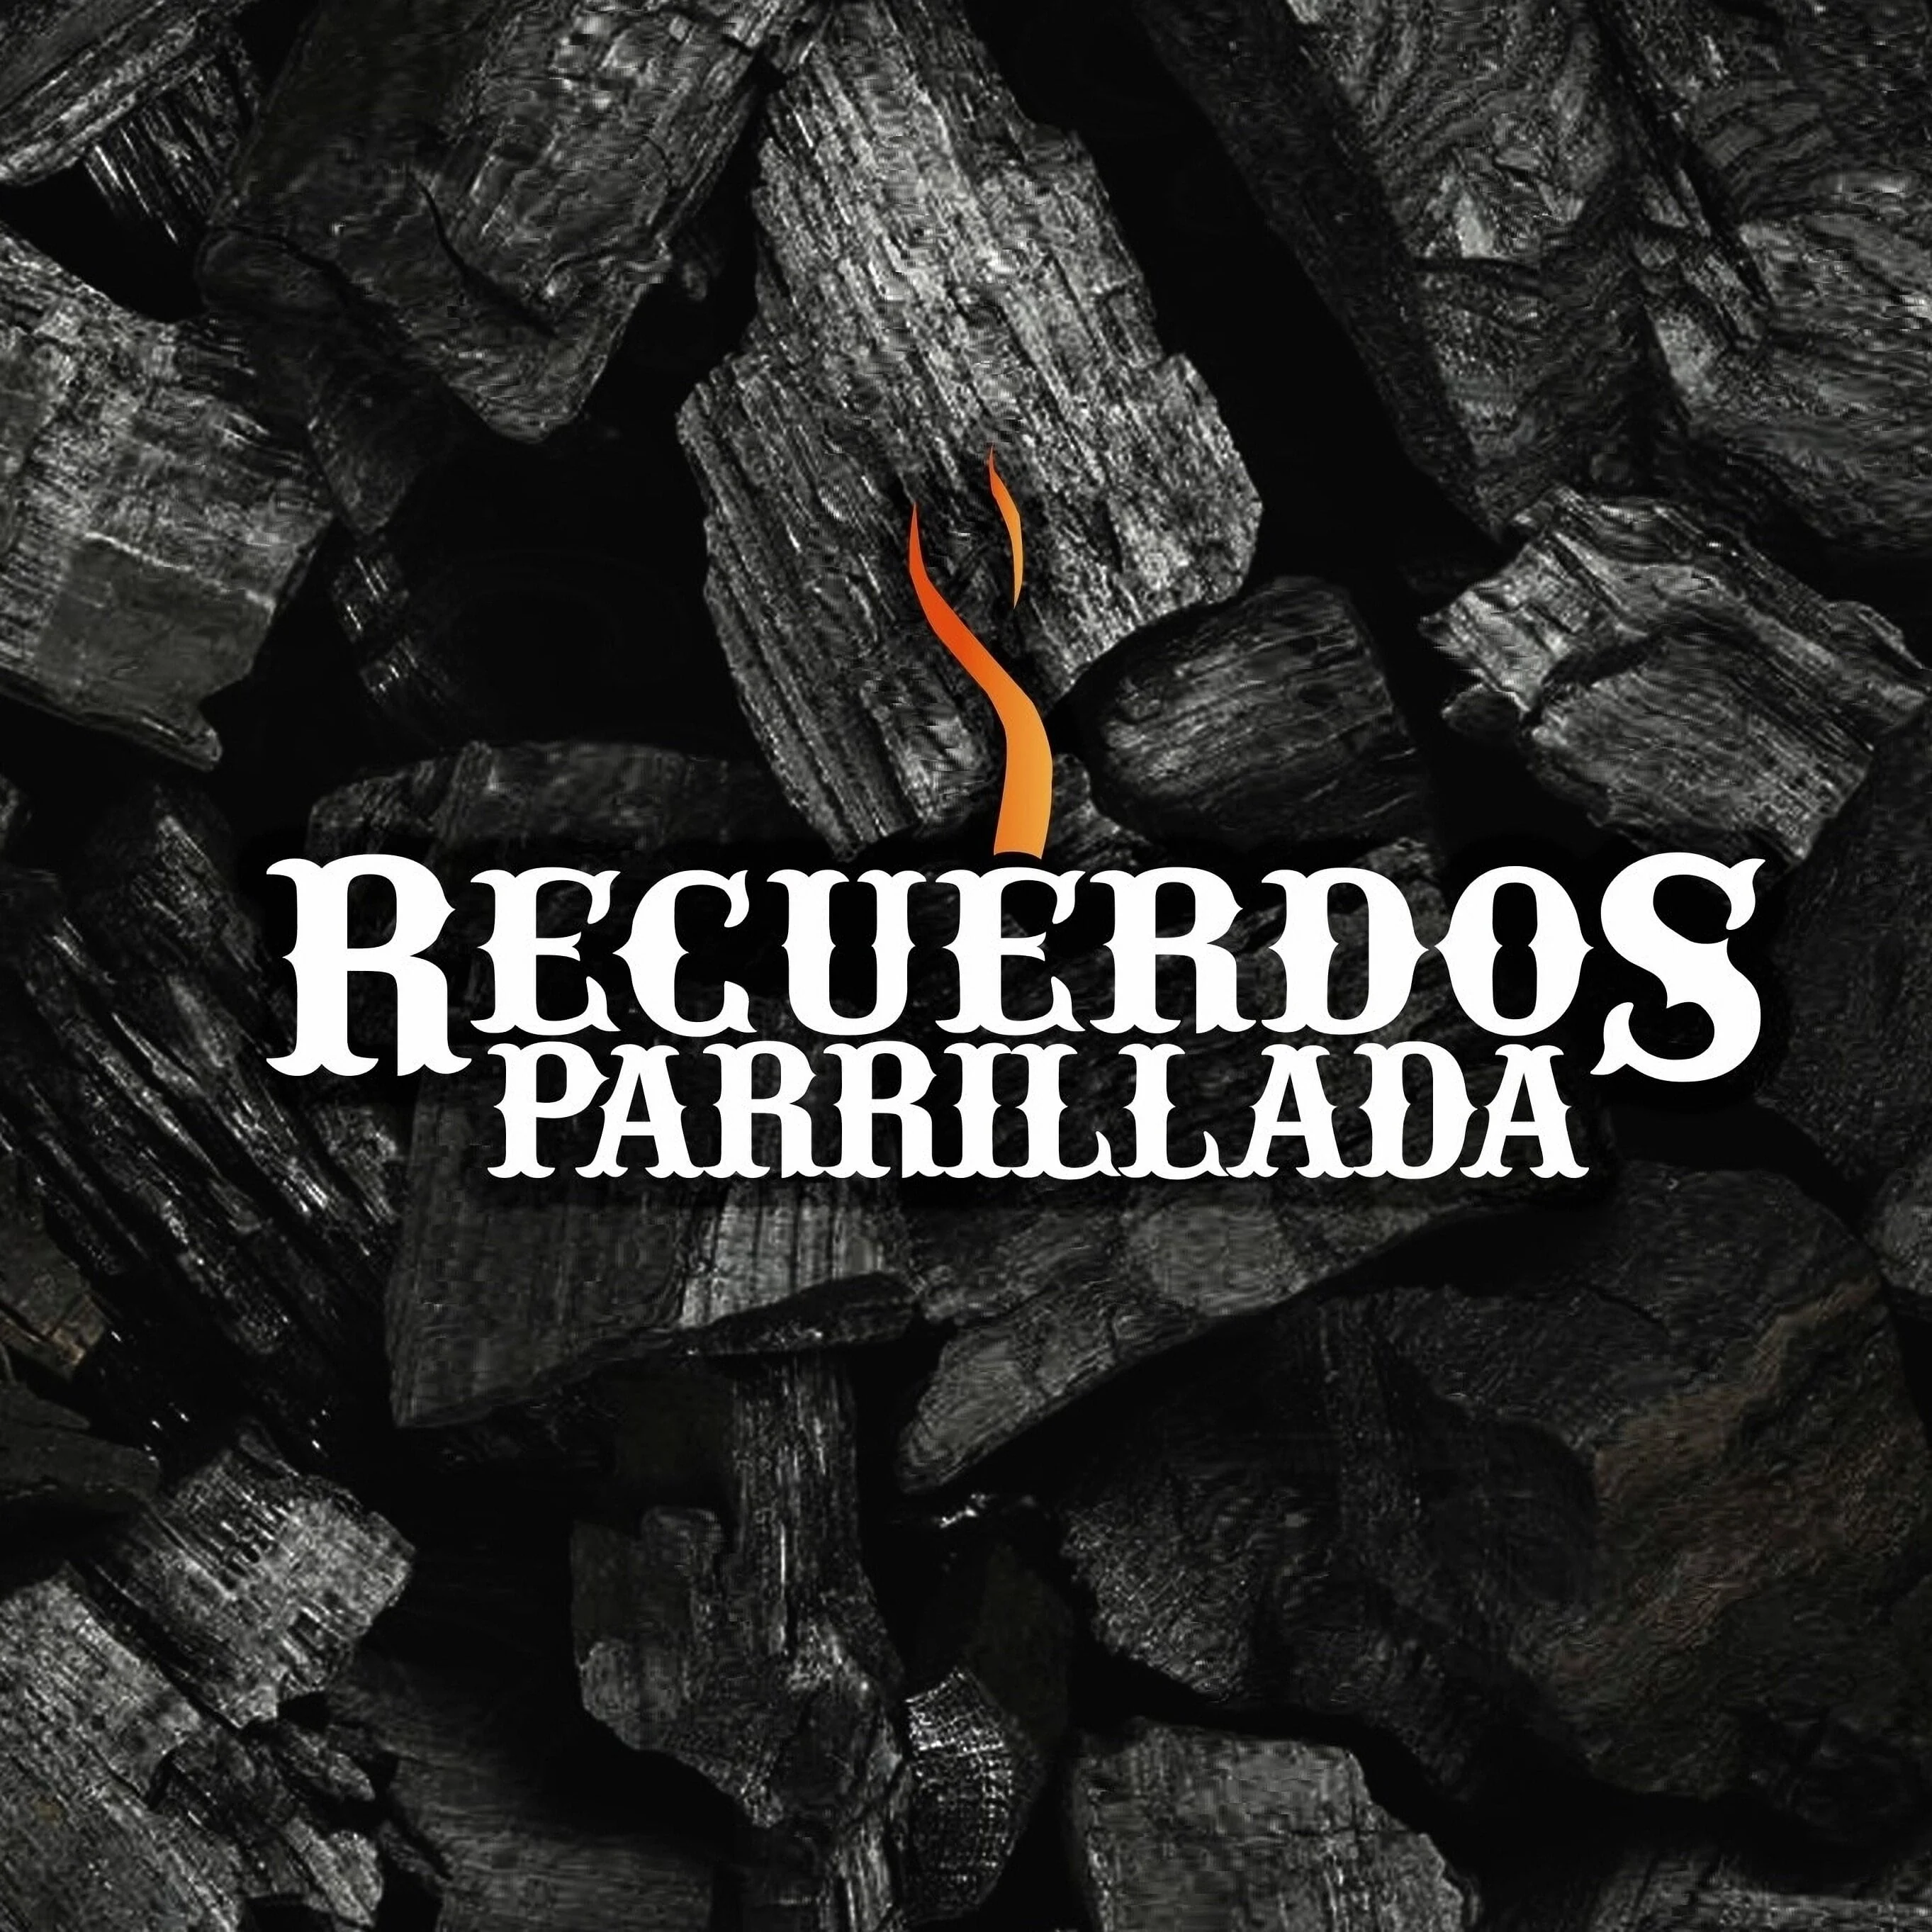 Recuerdos Parrillada-4733